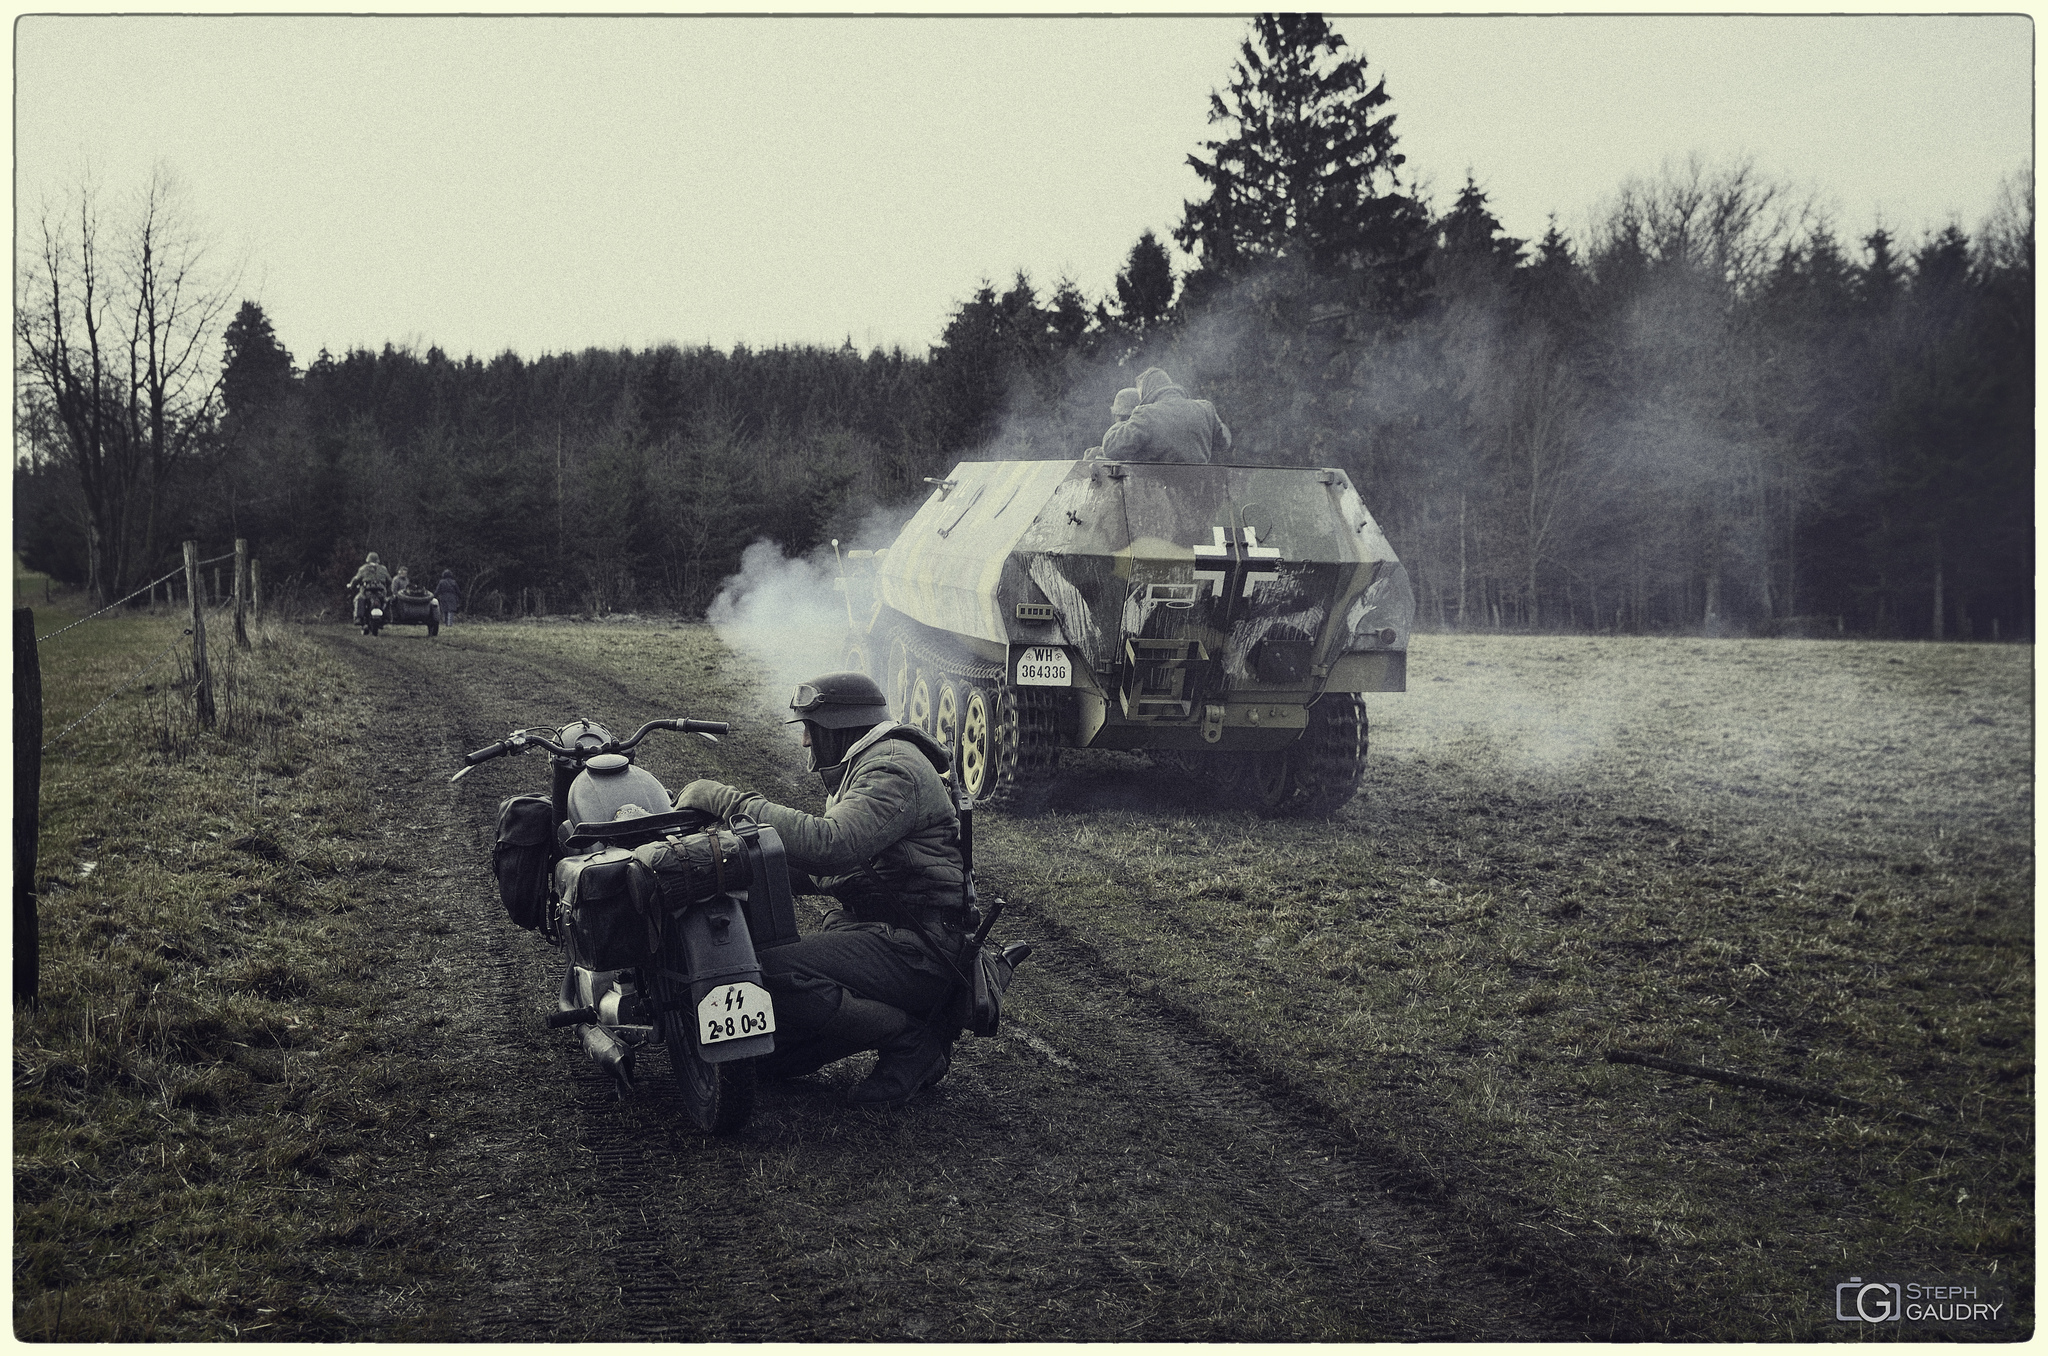 Bataille des Ardennes - Vintage / Mouvements des troupes allemandes - vintage